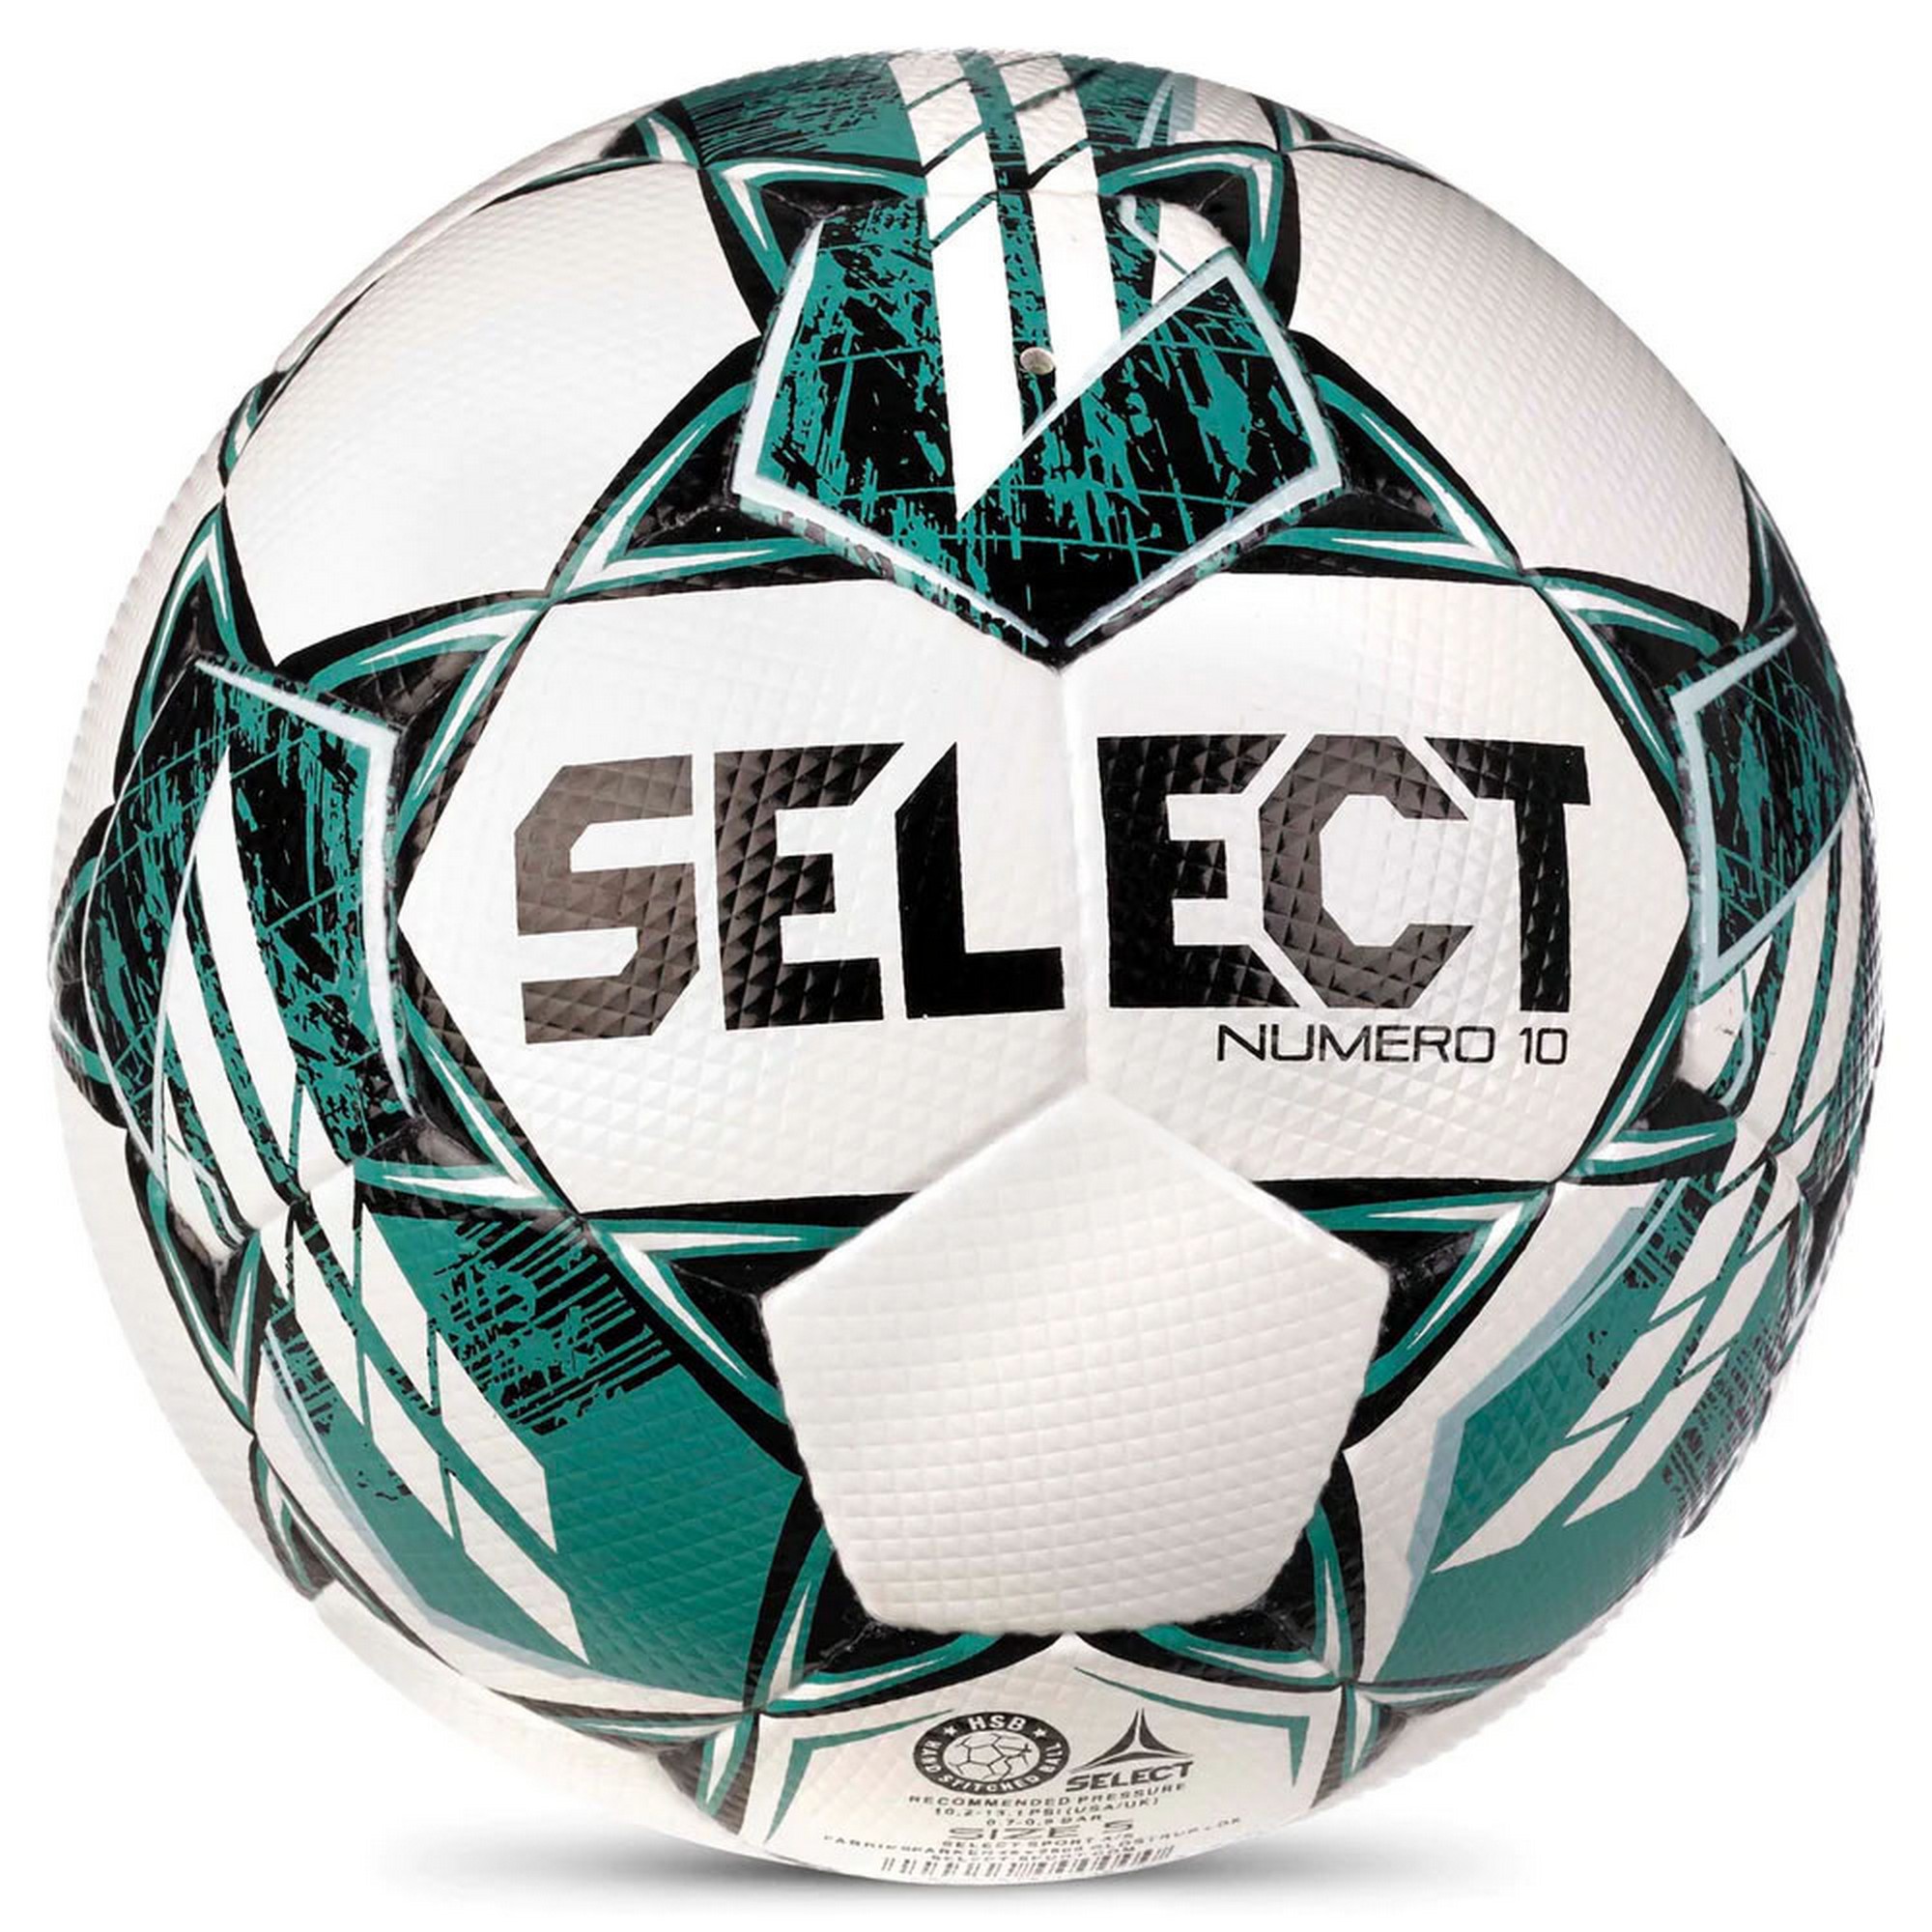 Мяч футбольный Select FB NUMERO 10 V23 0575060004 р.5, FIFA Basic 2000_2000